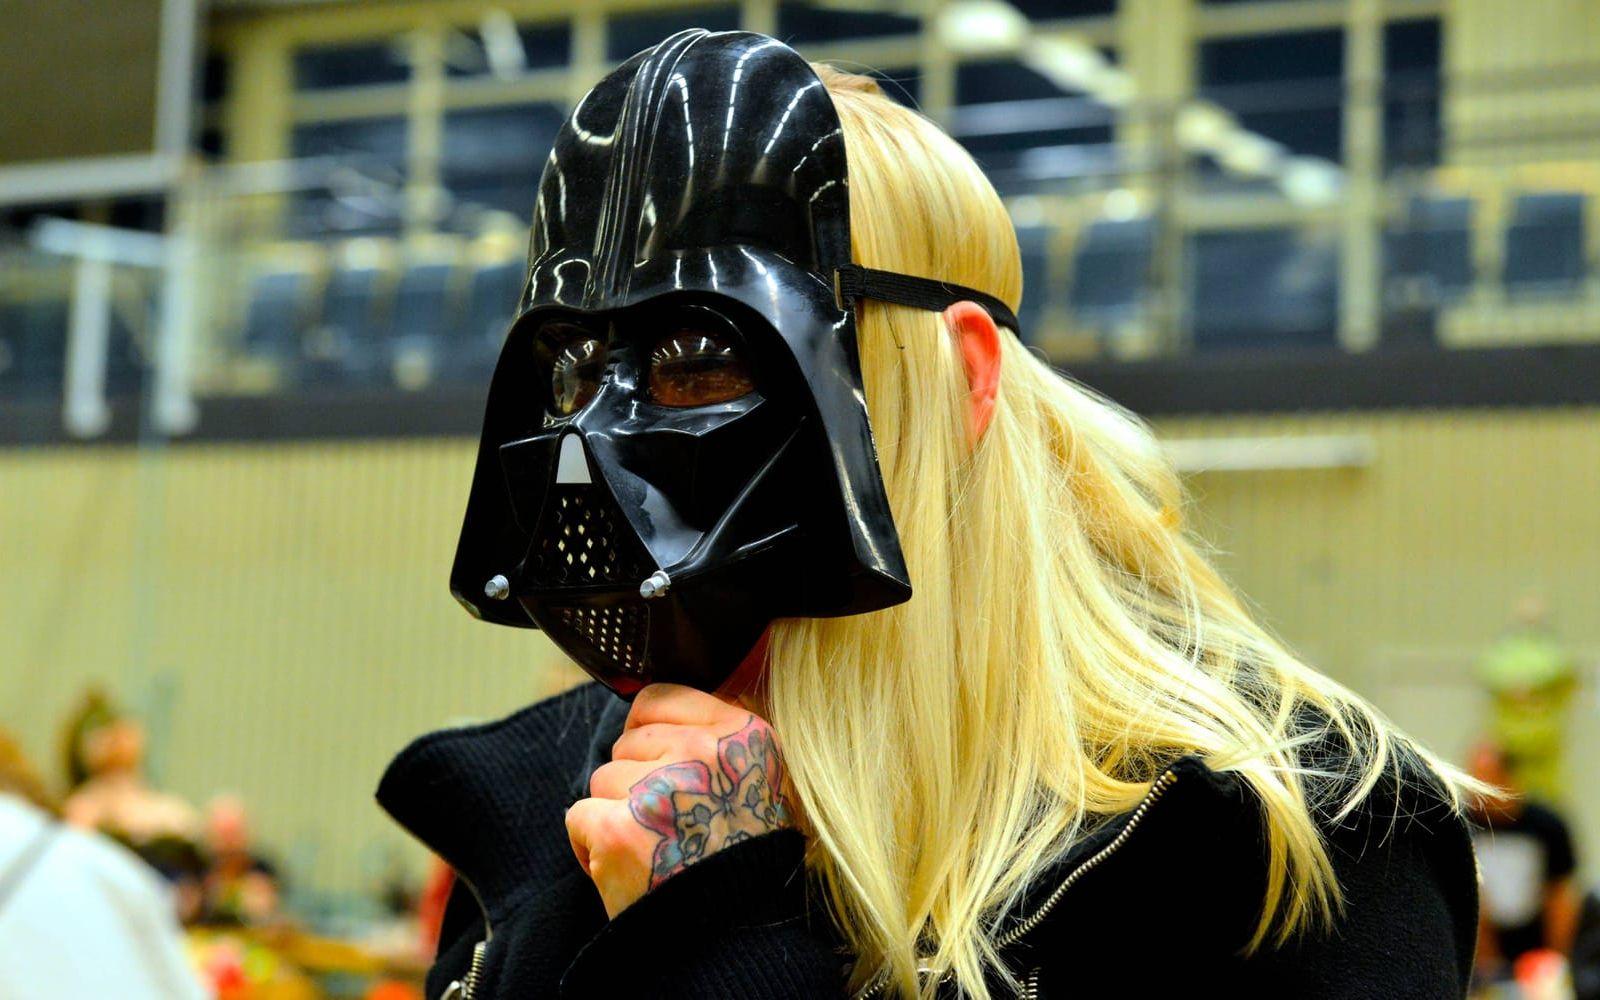 Mia Nyberg testar en Darth Vader-mask på Stora loppisdagen i Varberg. Bild: Maria Åkesson